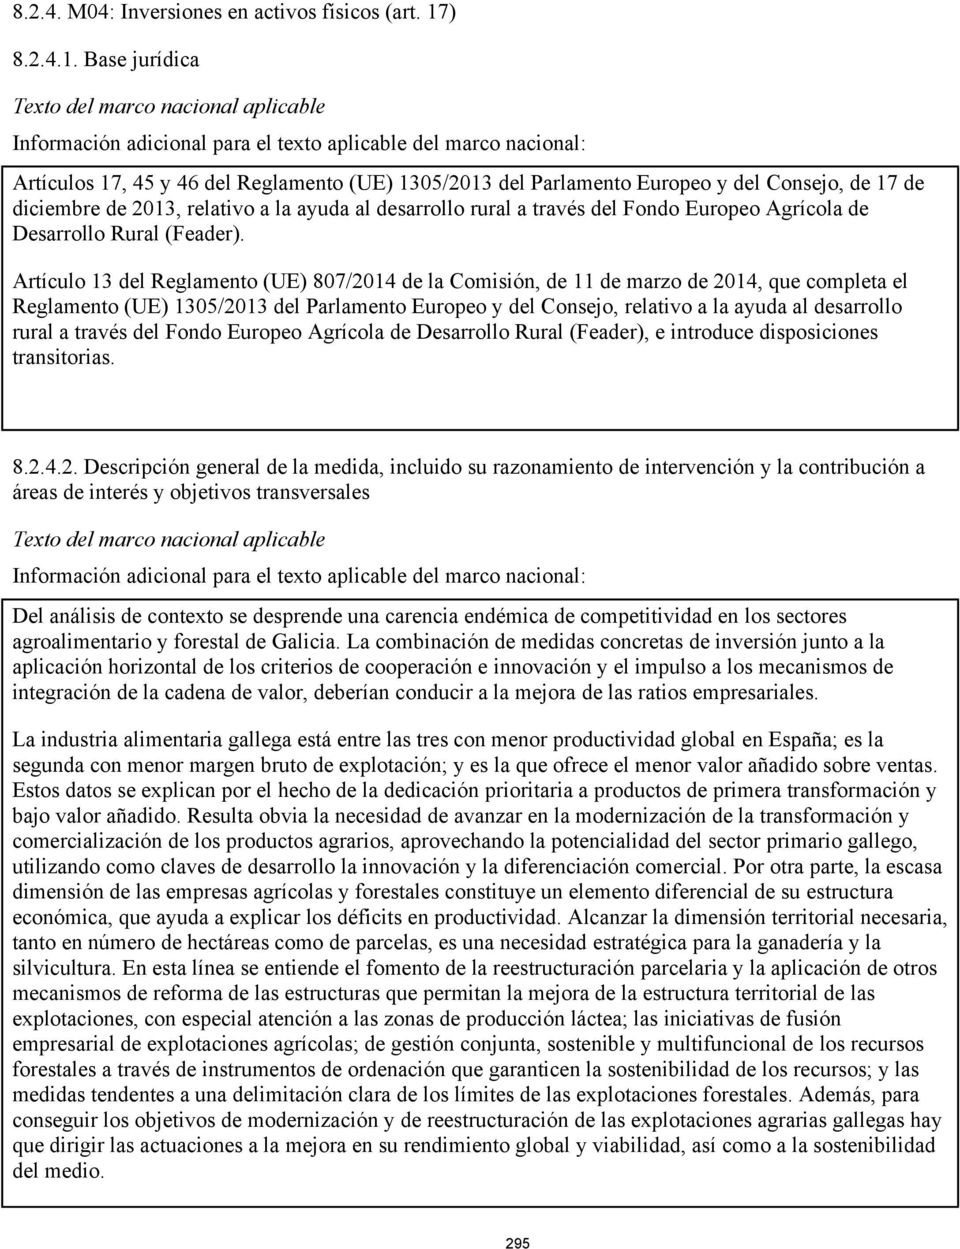 Base jurídica Artículos 17, 45 y 46 del Reglamento (UE) 1305/2013 del Parlamento Europeo y del Consejo, de 17 de diciembre de 2013, relativo a la ayuda al desarrollo rural a través del Fondo Europeo